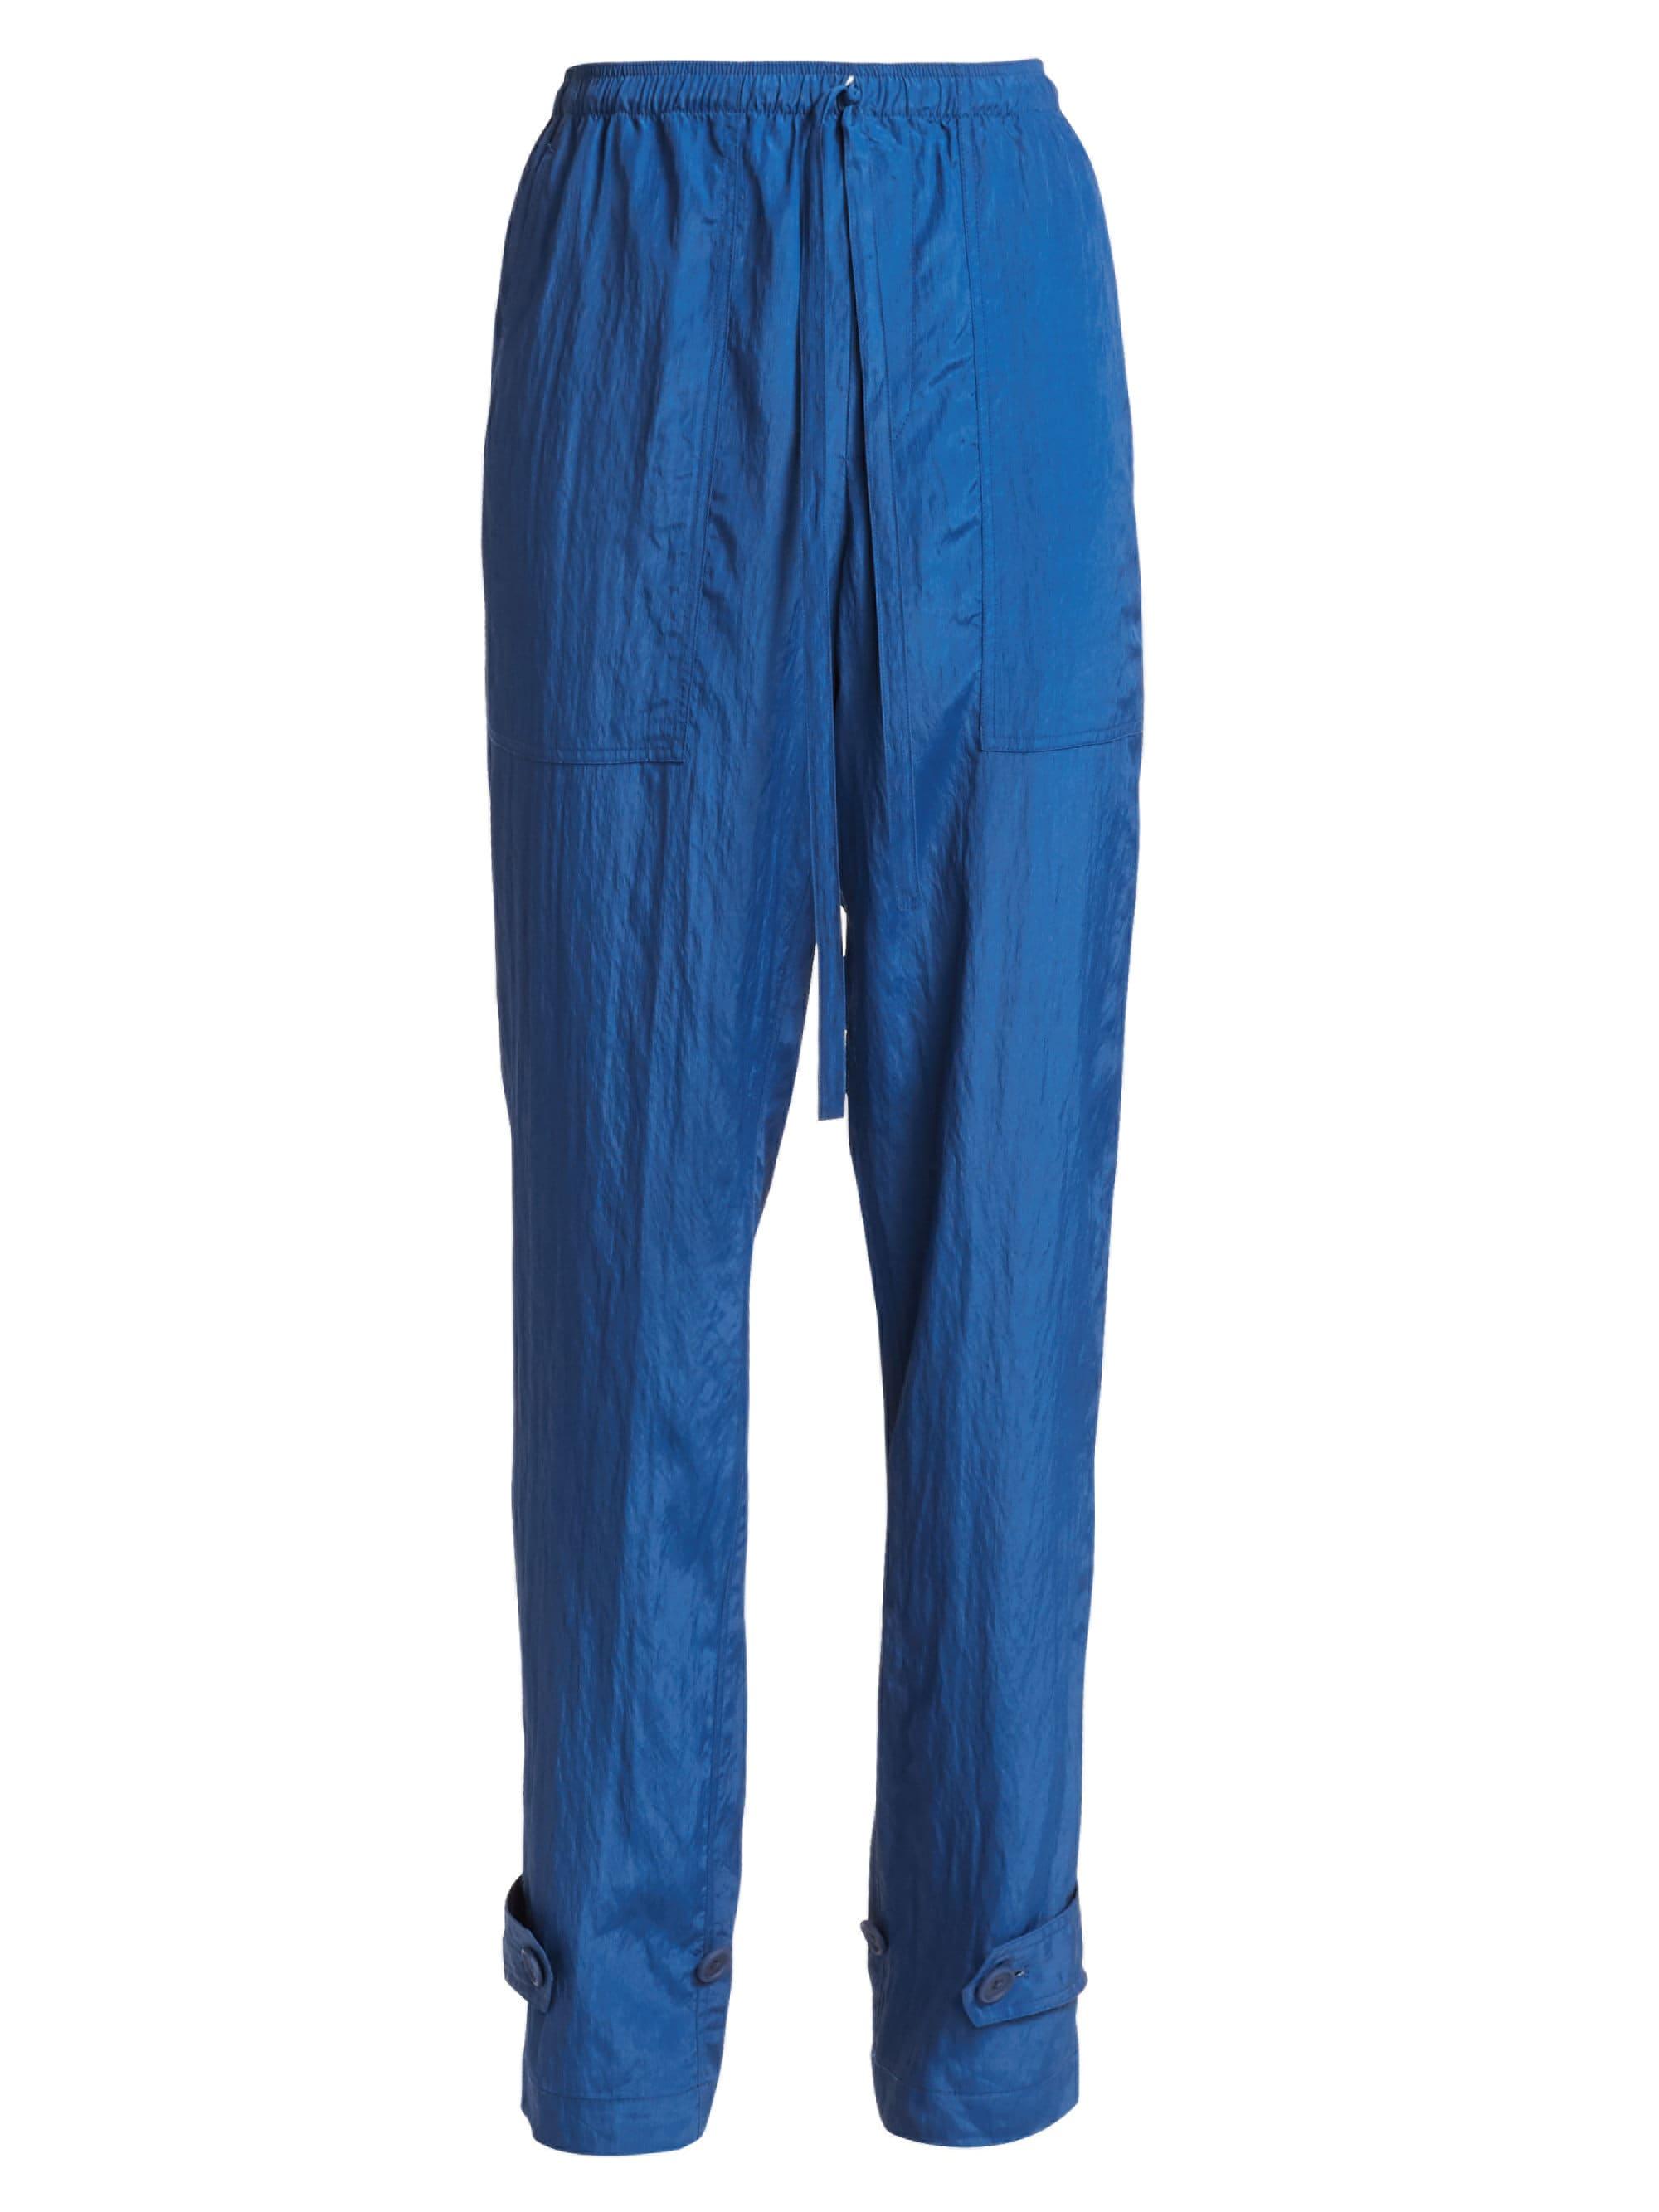 Helmut Lang Utility Parachute Pants in Blue - Lyst